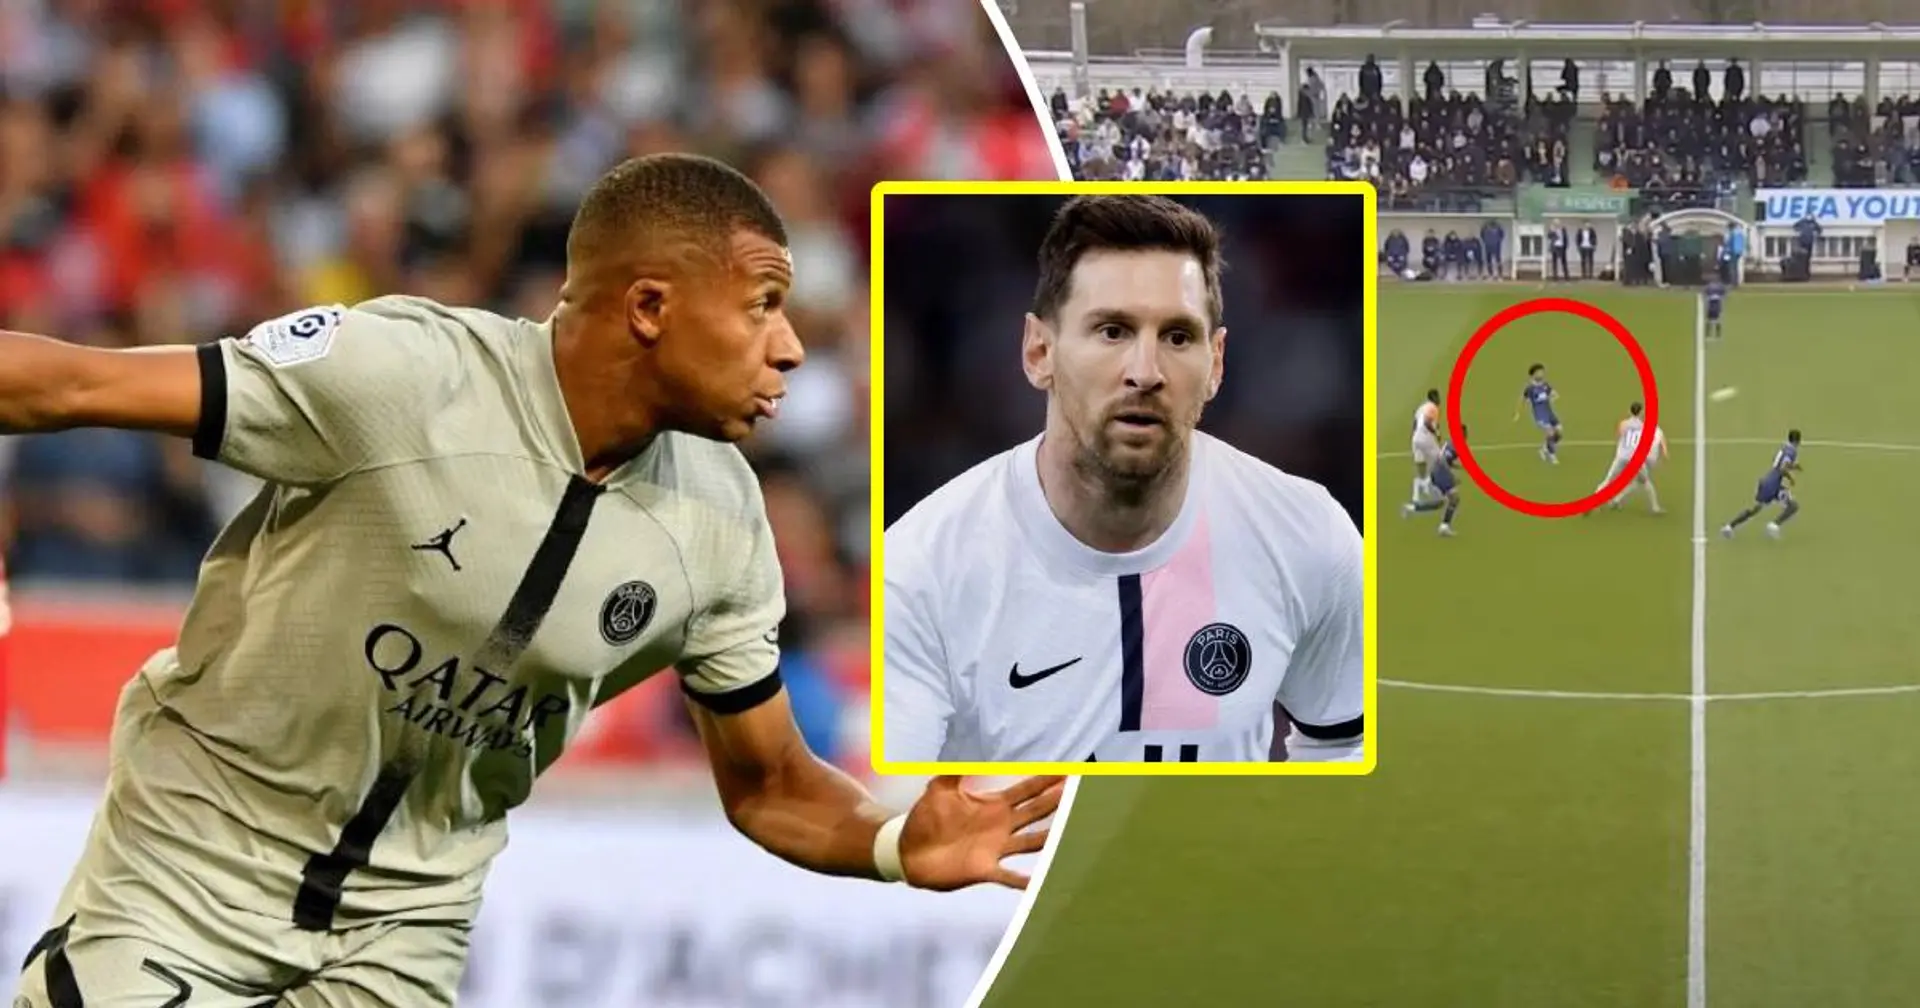 Le but magique de Mbappé à l'engagement vs Lille inspiré par les titis! le joueur dans le rôle de Messi n'était pas sur le banc